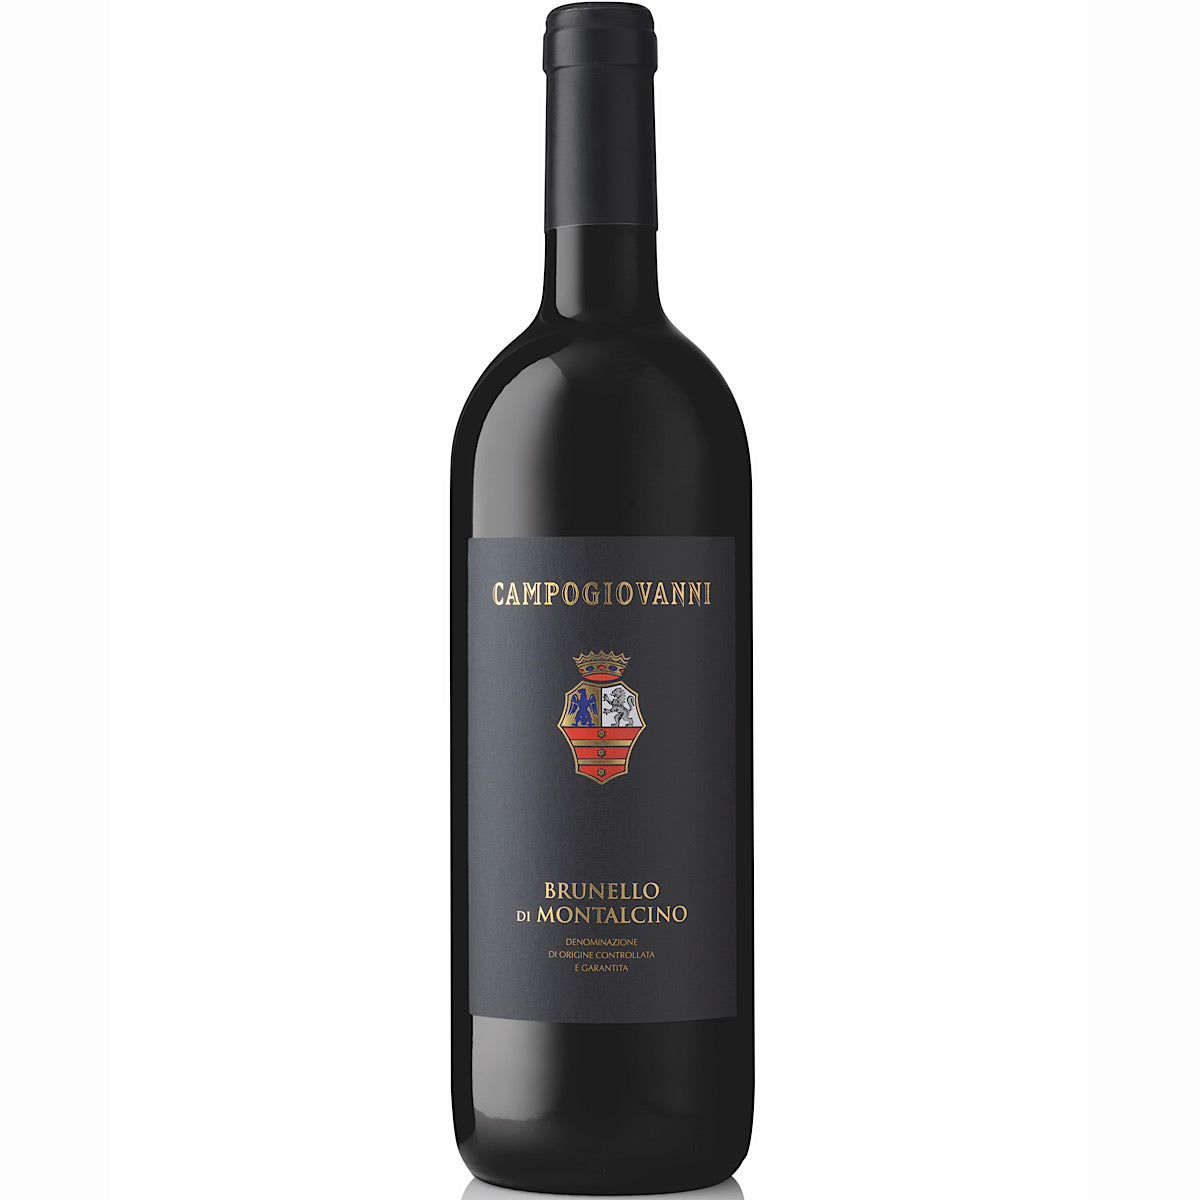 Campogiovanni Brunello di Montalcino 2018- 6 Bottle Case 75cl